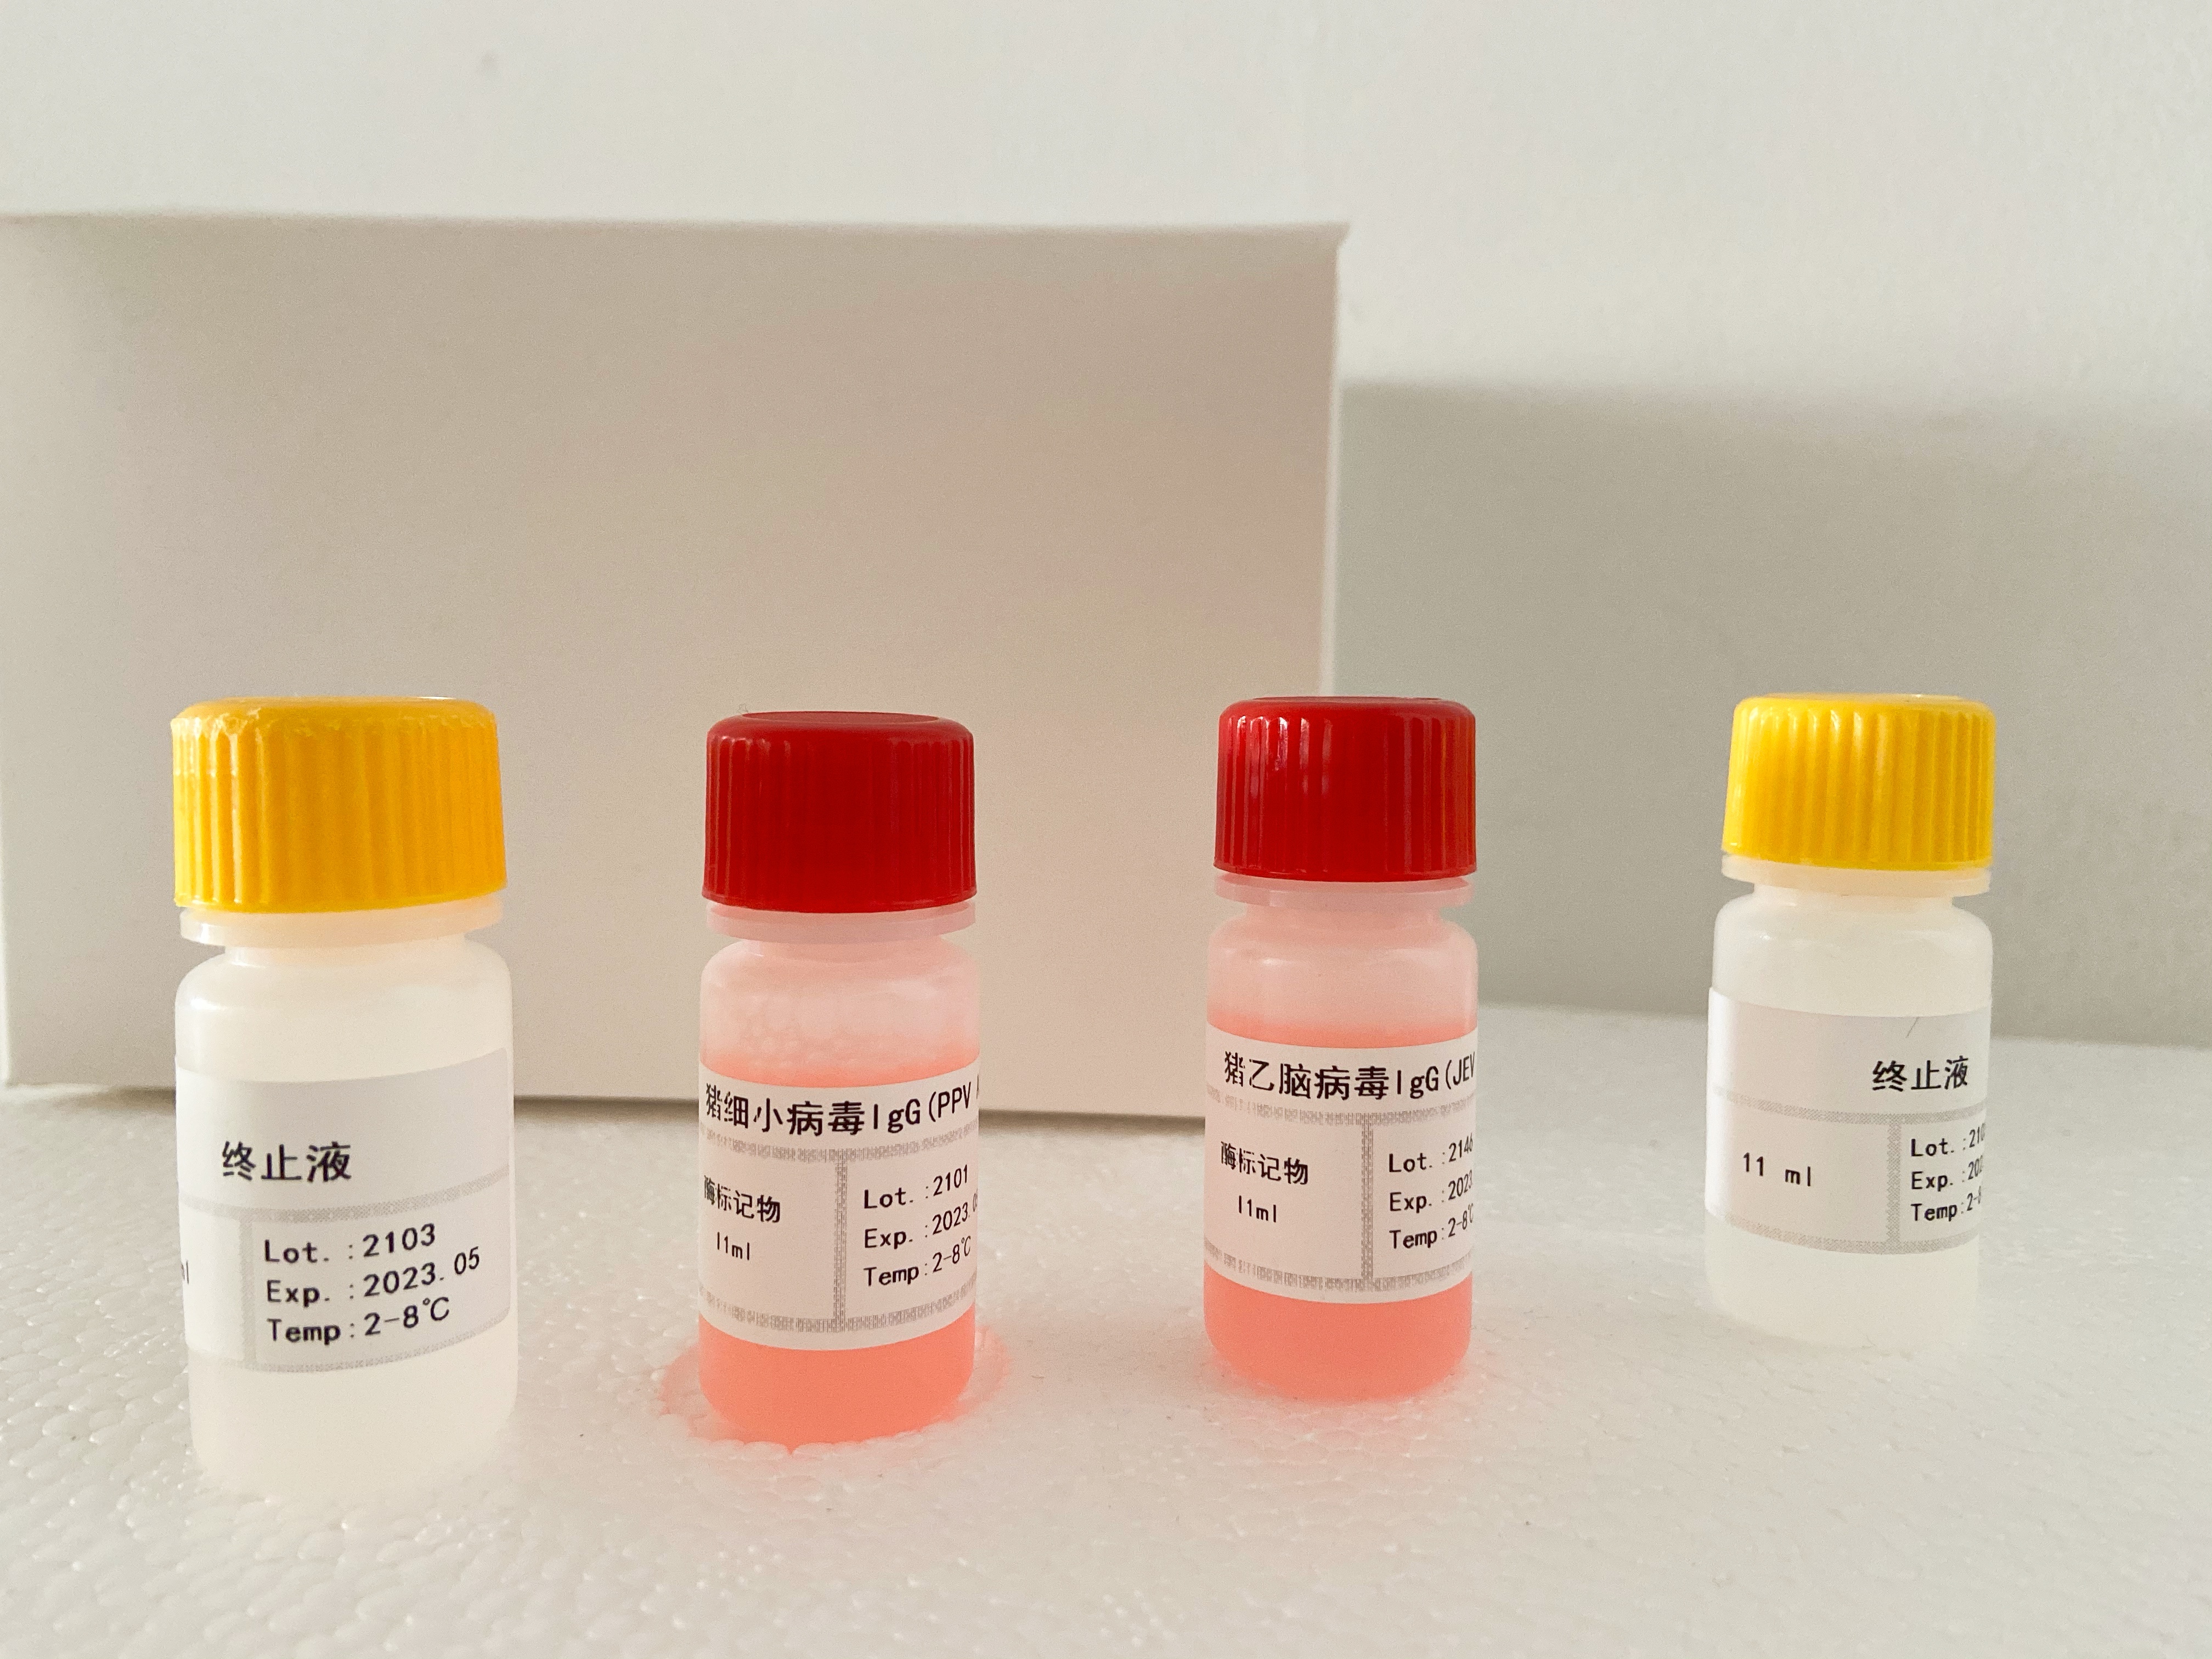 小鼠尿嘧啶核苷磷酸化酶1(UPP1)检测试剂盒